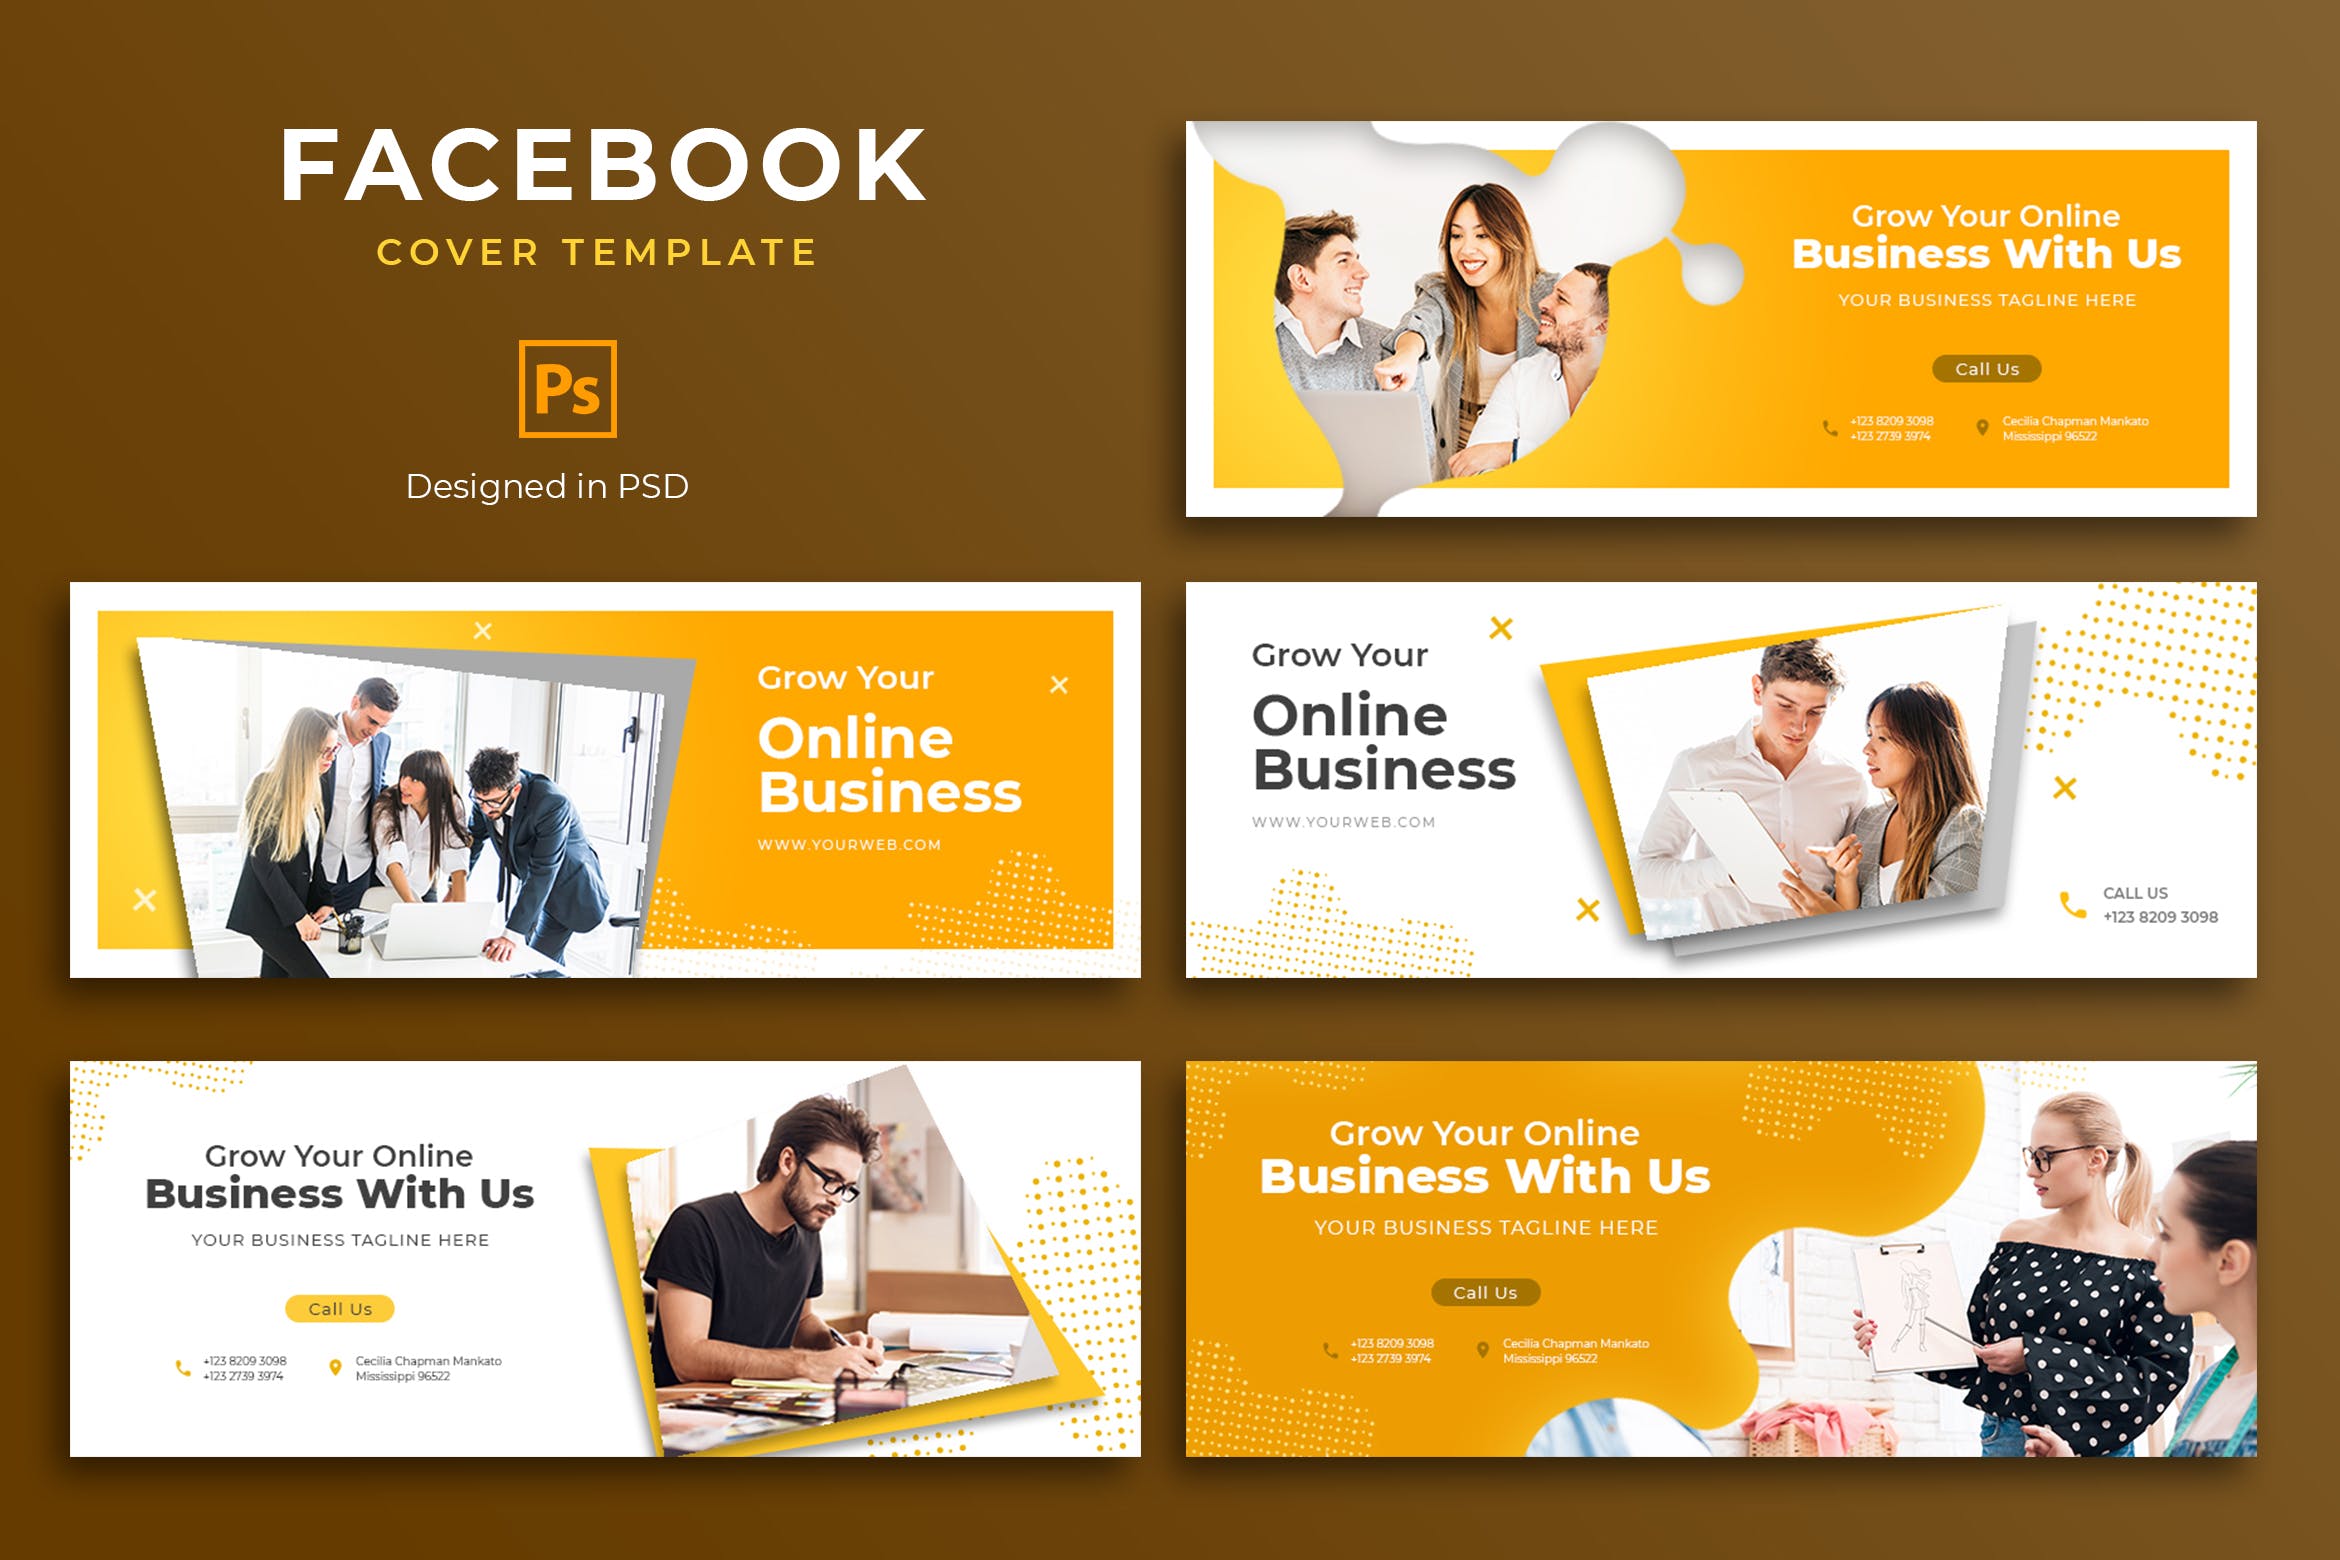 商业推广Facebook主页封面设计模板蚂蚁素材精选 Business Facebook Cover Template插图